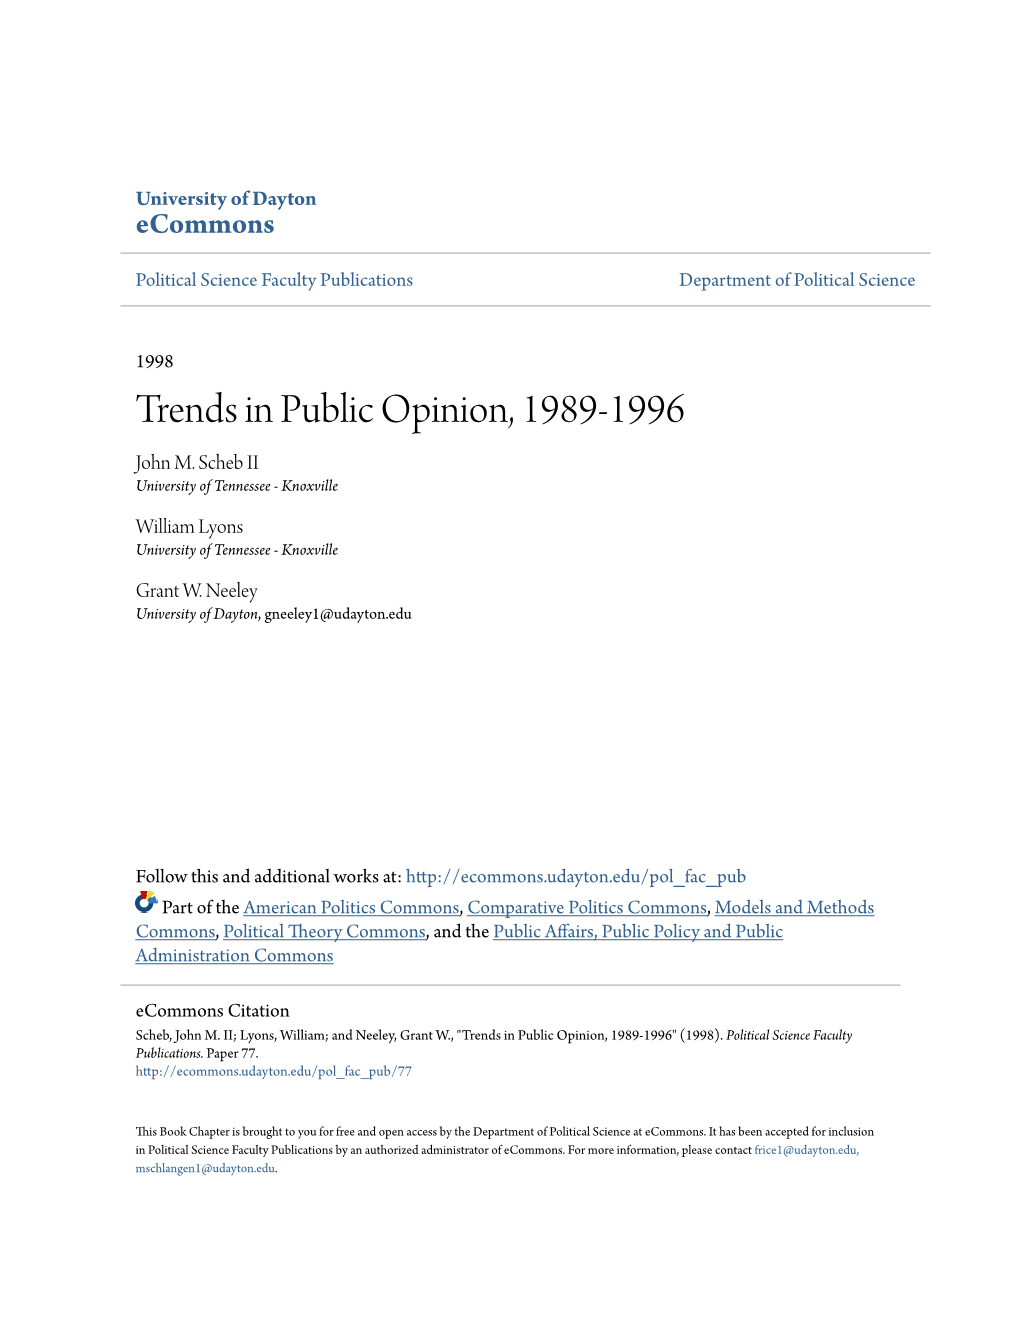 Trends in Public Opinion, 1989-1996 John M